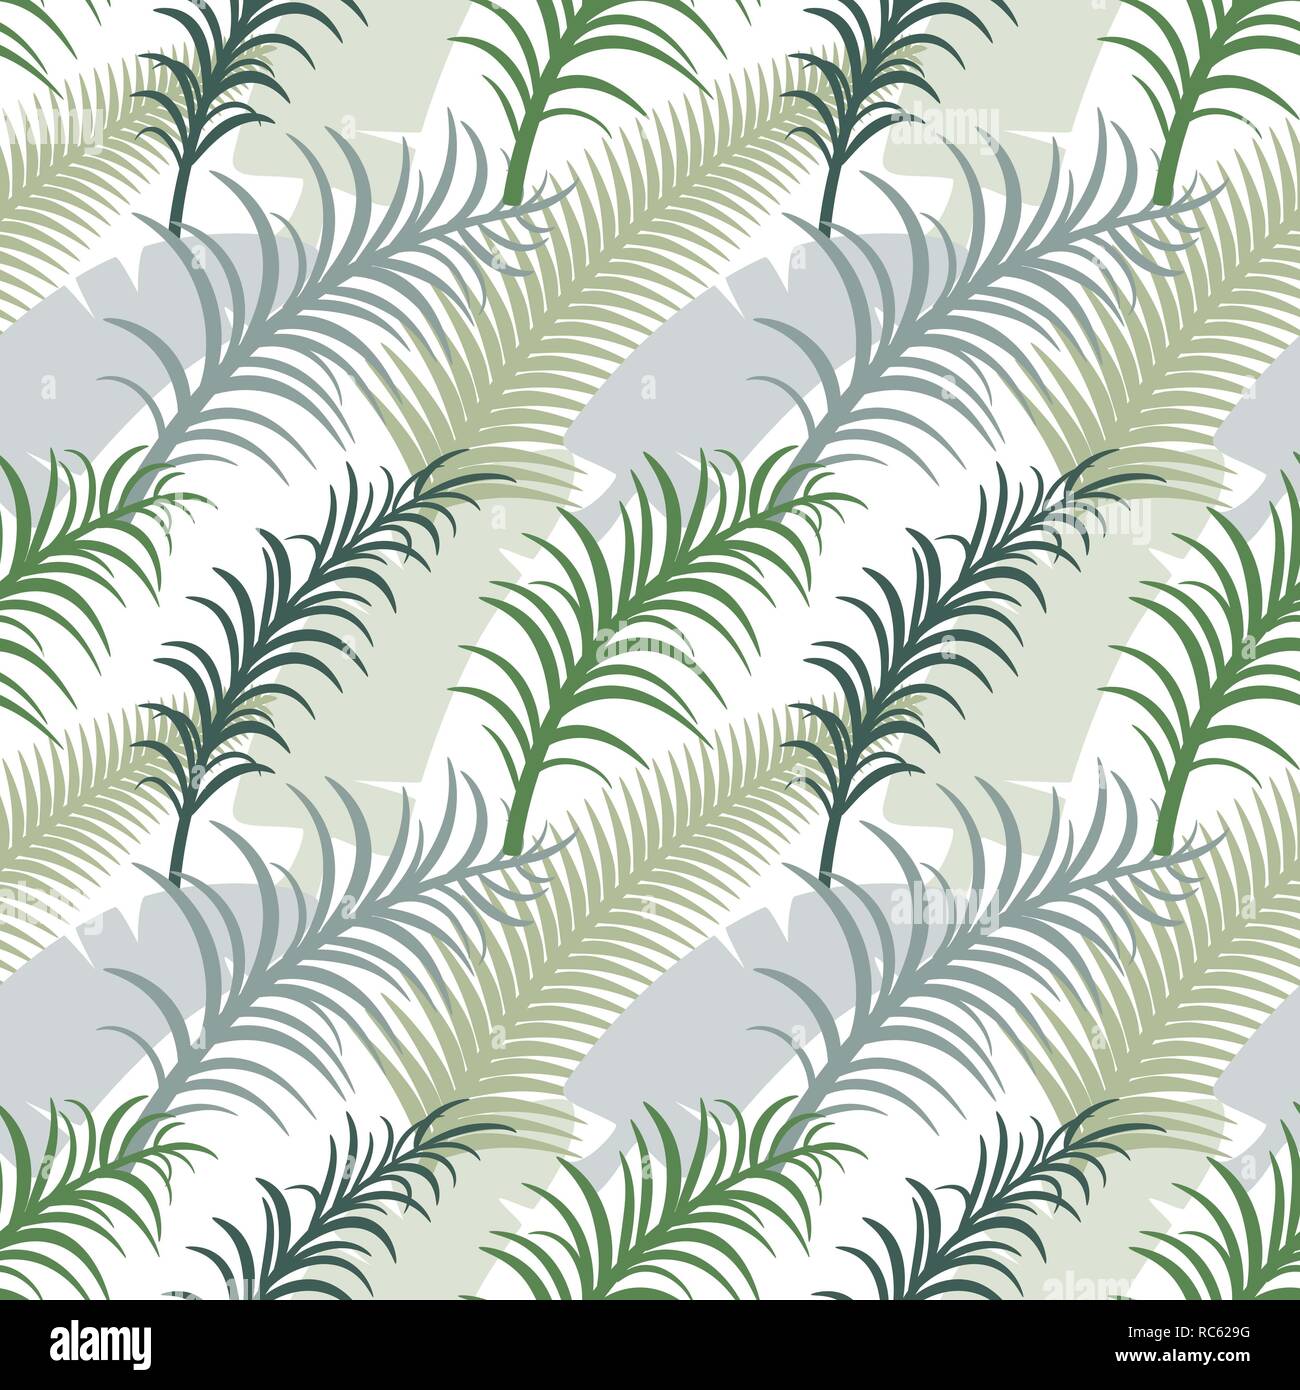 Motif transparent vert tropical avec des feuilles de palmier. Banque D'Images